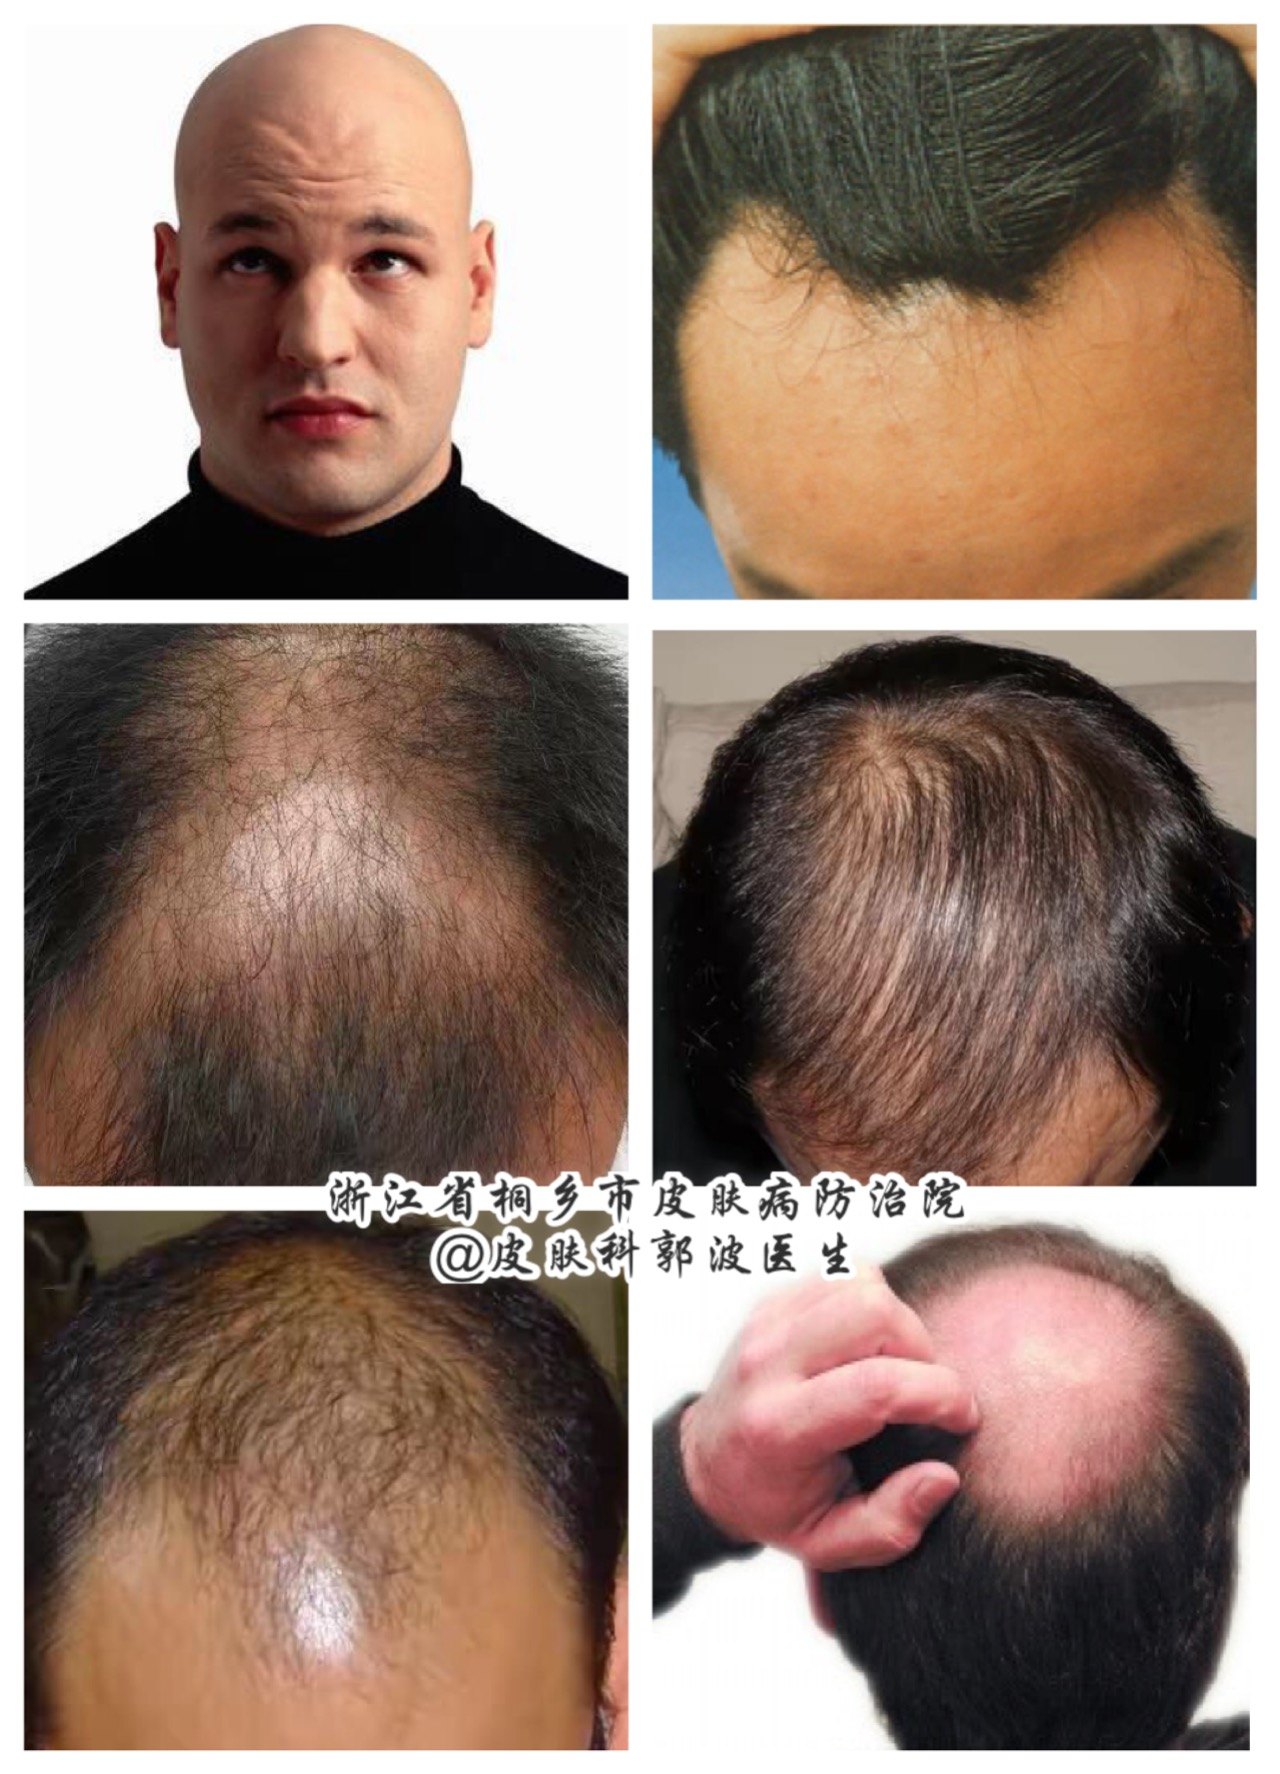 据统计,有25%的男性在30岁以前就出现了雄激素型脱发(也称脂溢性脱发)